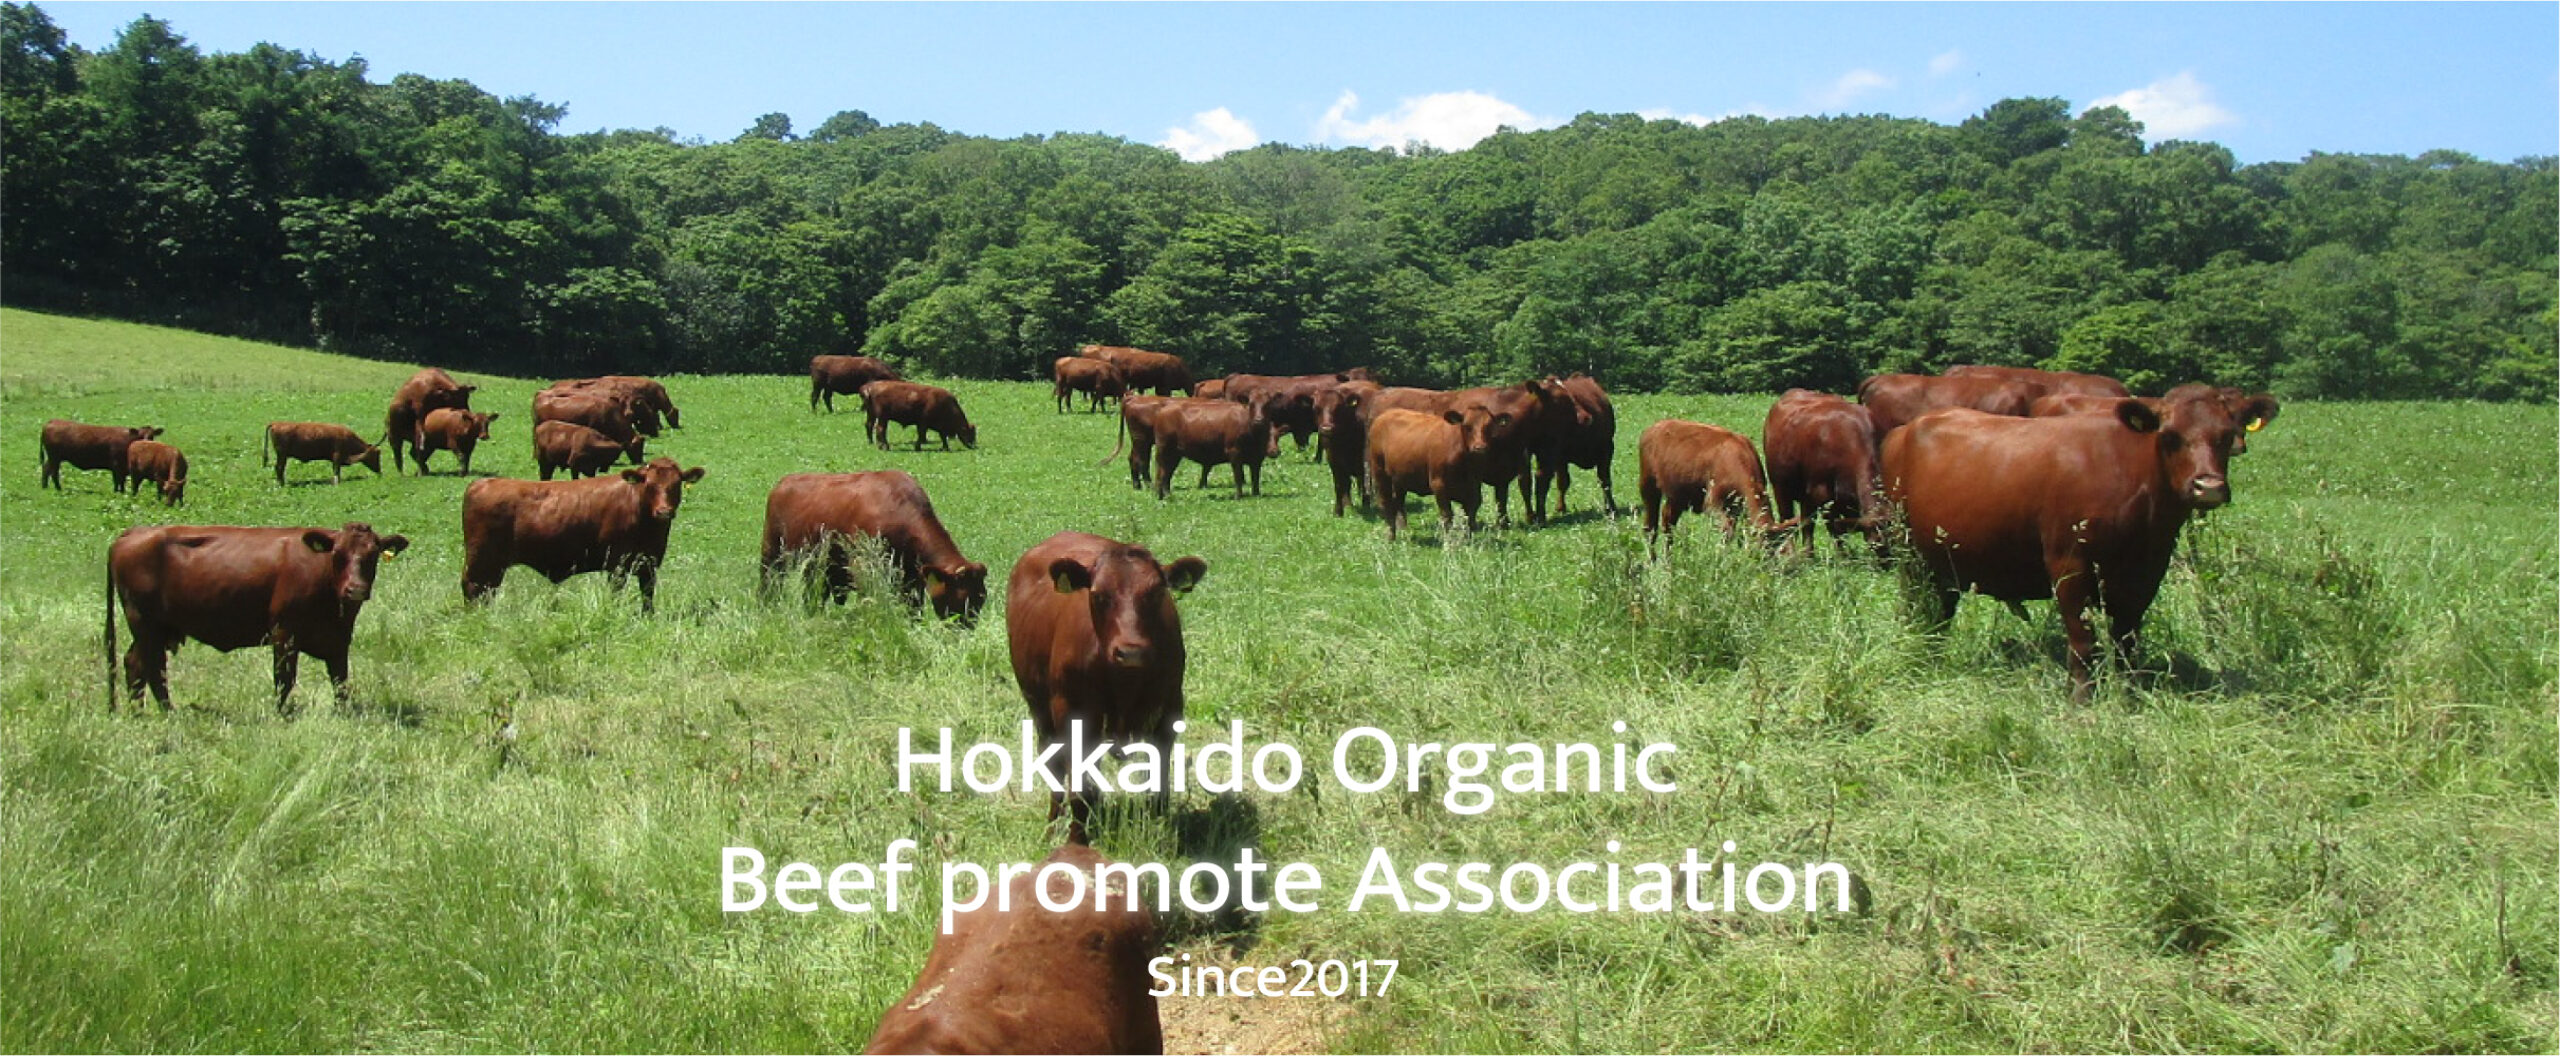 北海道産の有機畜産物、主には牛肉の生産技術を向上し普及活動を行うとともに、マーケットを拡大・流通を発展させていくことを目標に活動をしています。